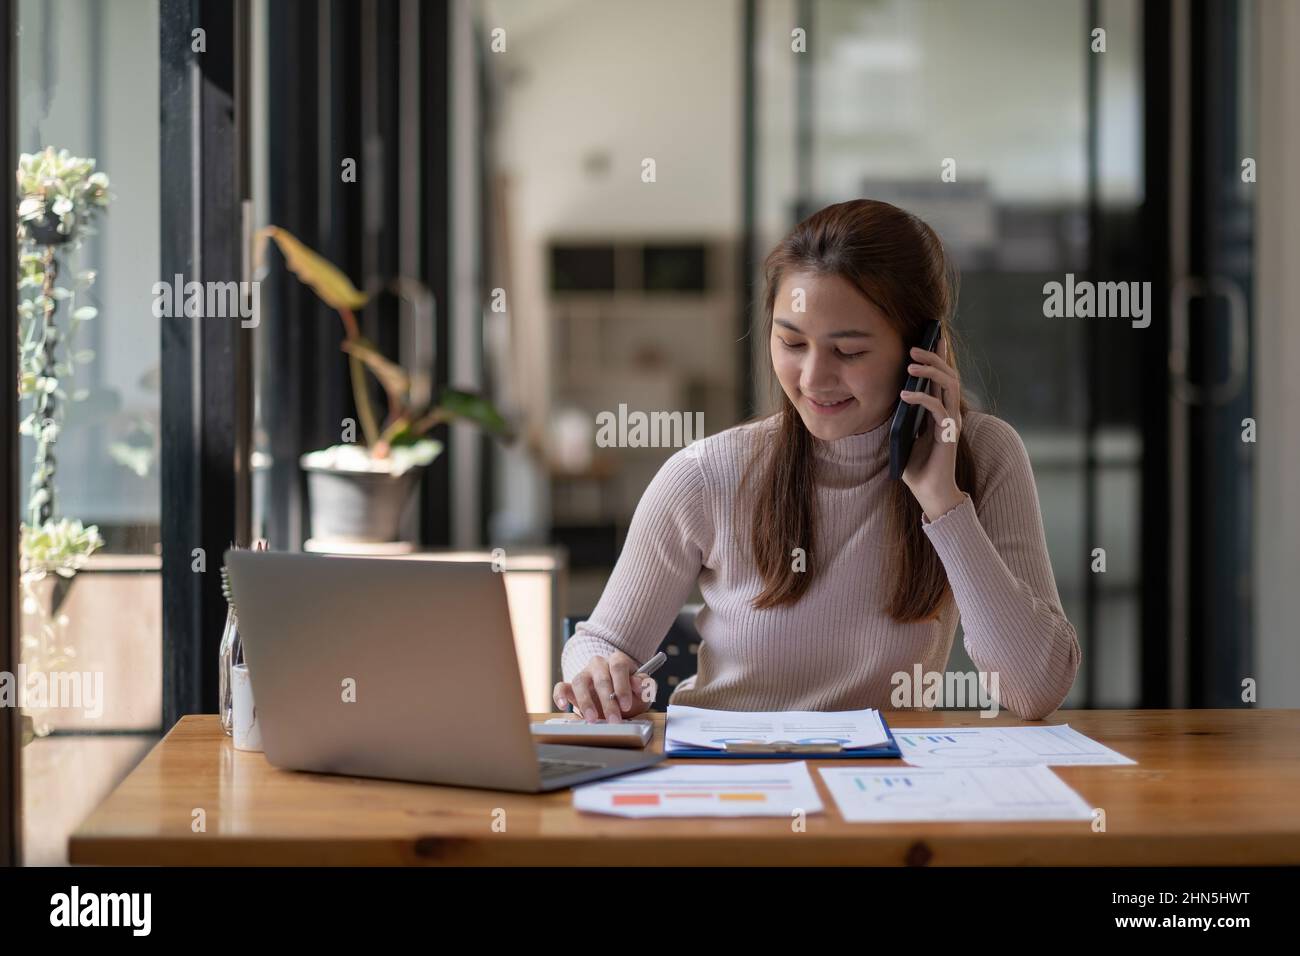 Porträt einer jungen asiatischen Frau, die an ihrem Schreibtisch sitzt und mit Taschenrechner und Papierkram arbeitet, während sie im modernen Büro mit dem Mobiltelefon telefoniert. Stockfoto